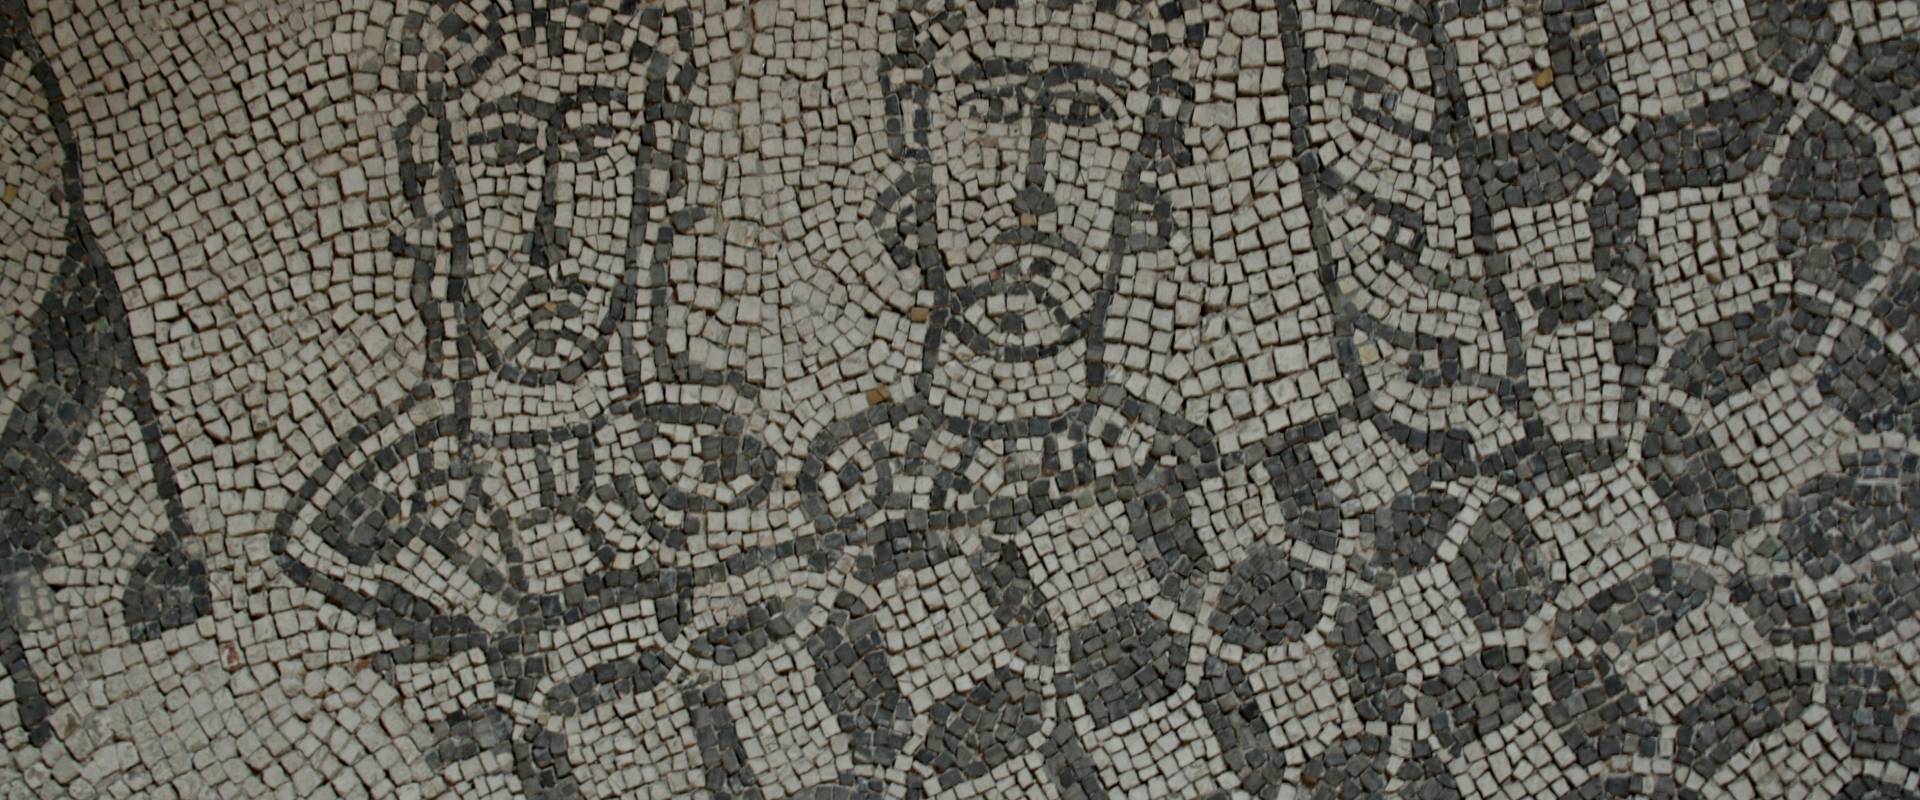 Palazzo di Teodorico - Mosaico piano superiore 8 foto di Walter manni